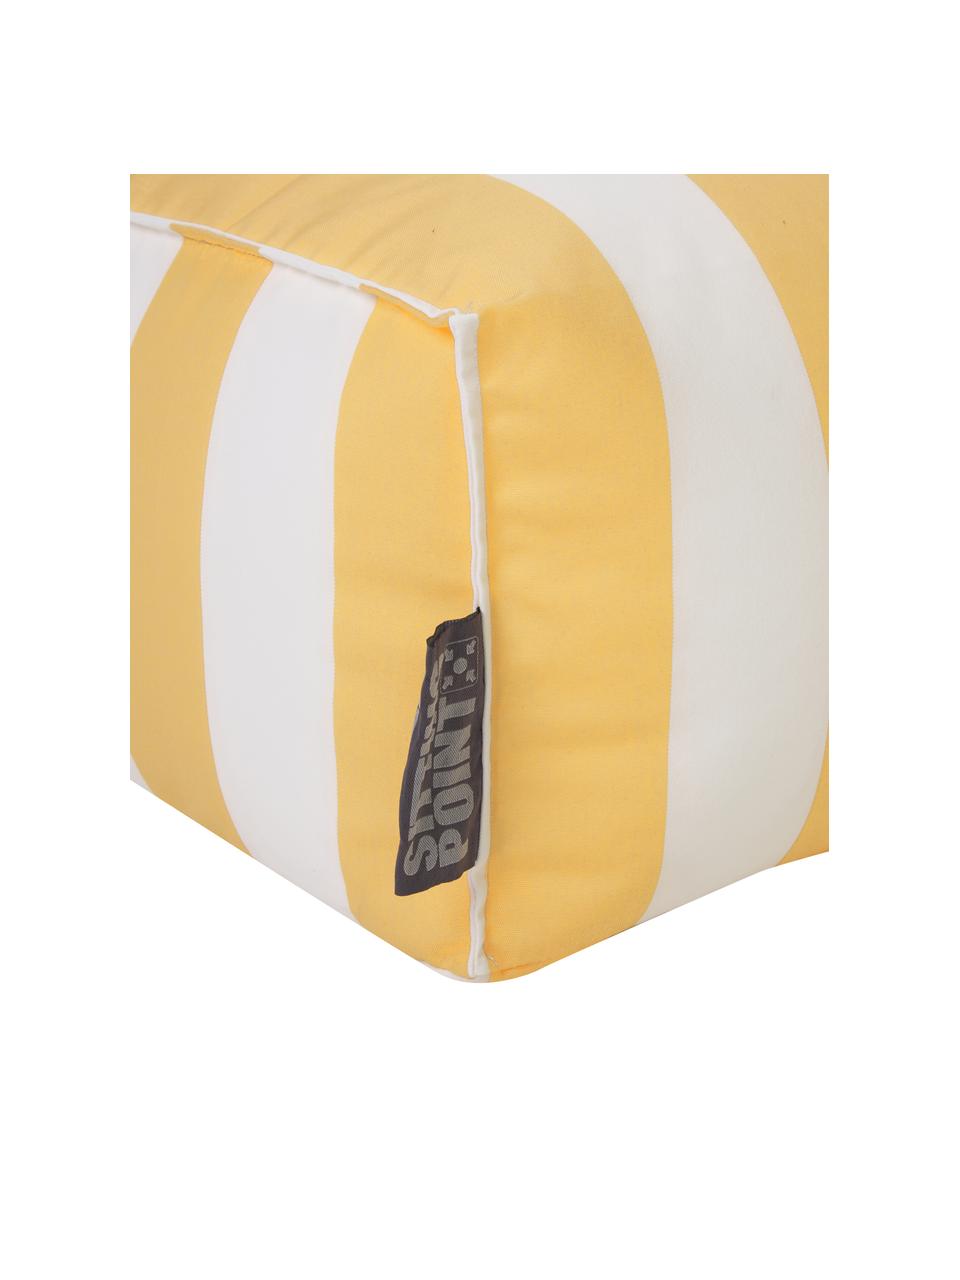 Outdoor-Bodenkissen Korfu in Gelb/Weiß, Bezug: 100% Polypropylen, Teflon, Gelb, Weiß, B 65 x H 35 cm